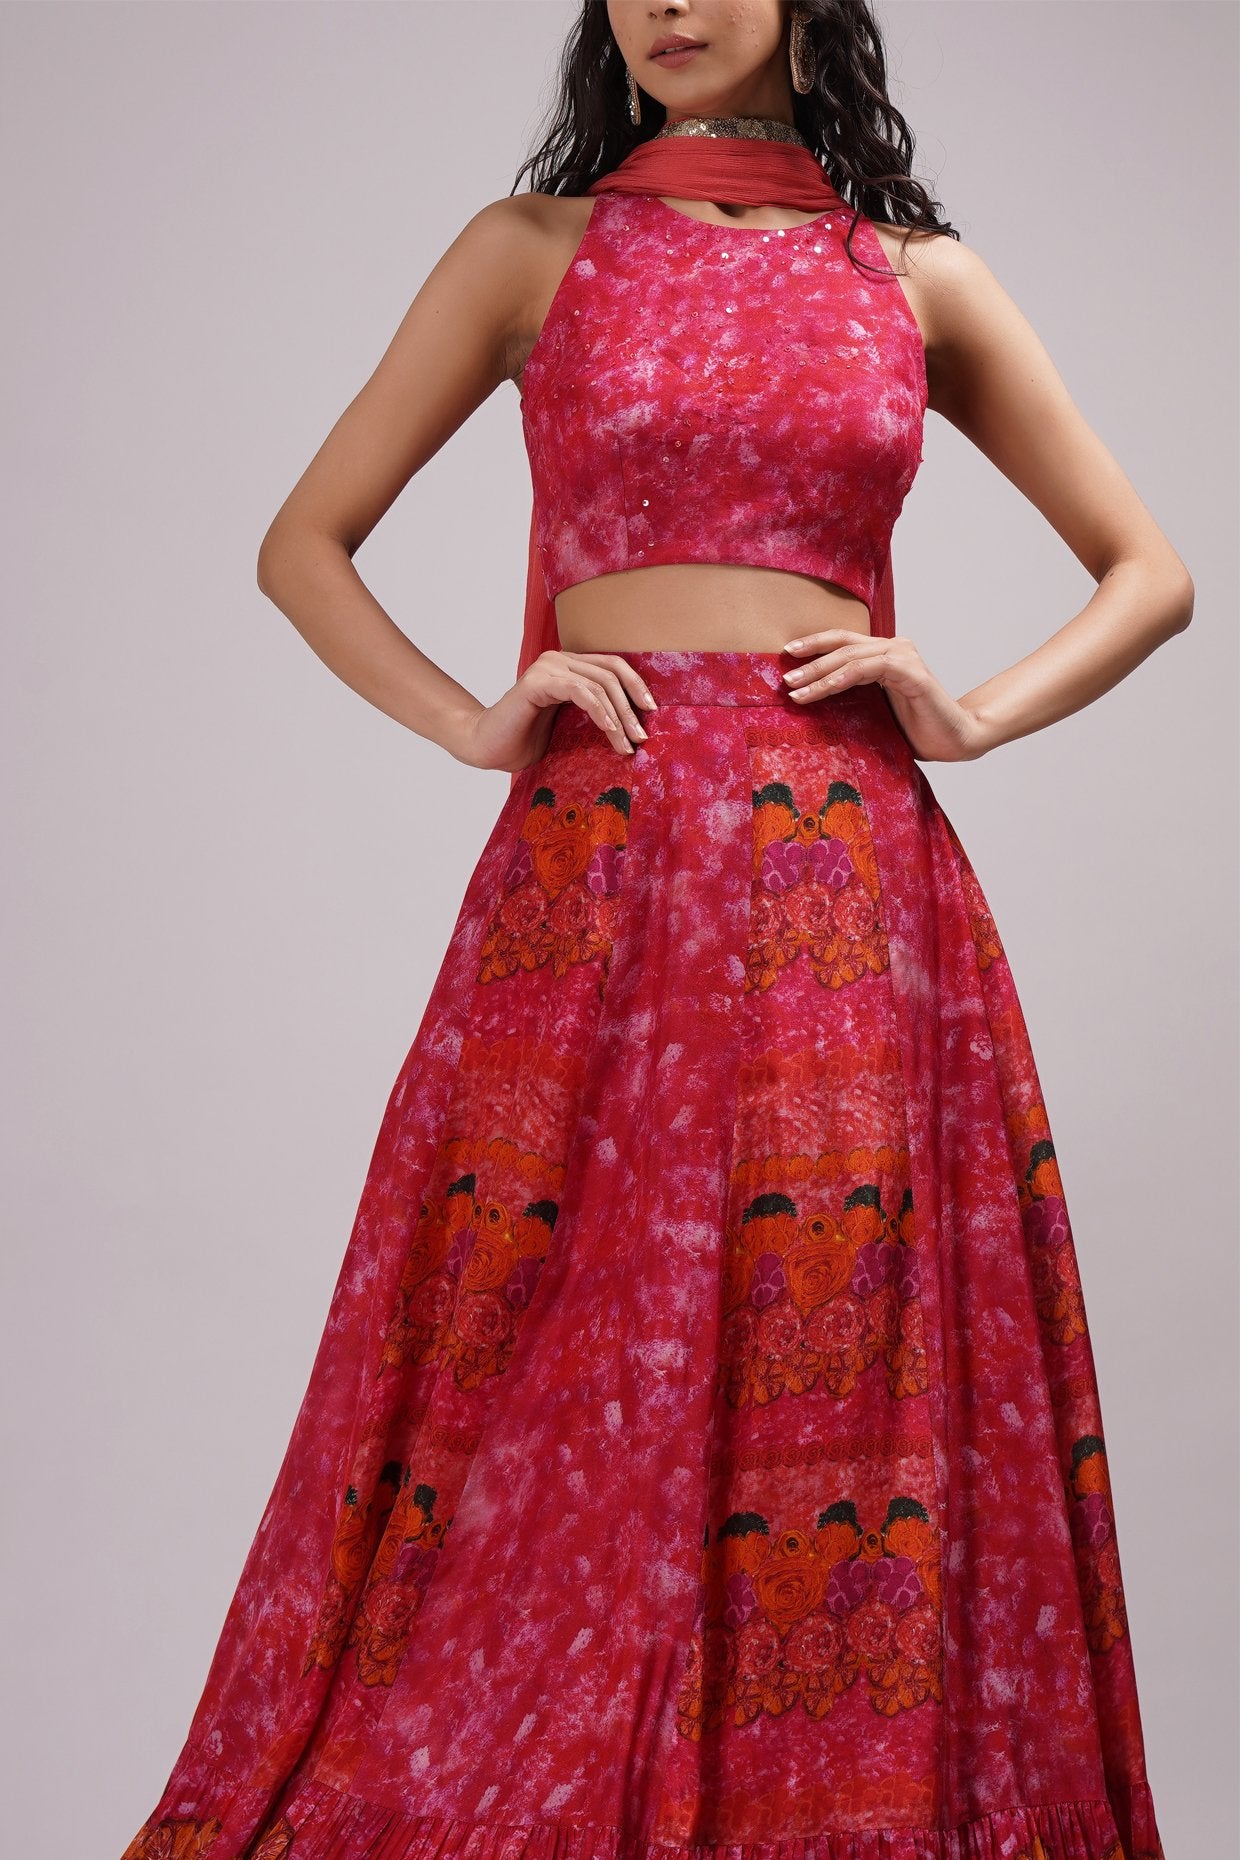 Buy Designer Pink and White Lehenga Choli for Women Halter Neck Style  Indian Wedding Lehenga Choli Party Wear Lengha Choli Bridesmaids Lehengas  Online in India - Etsy